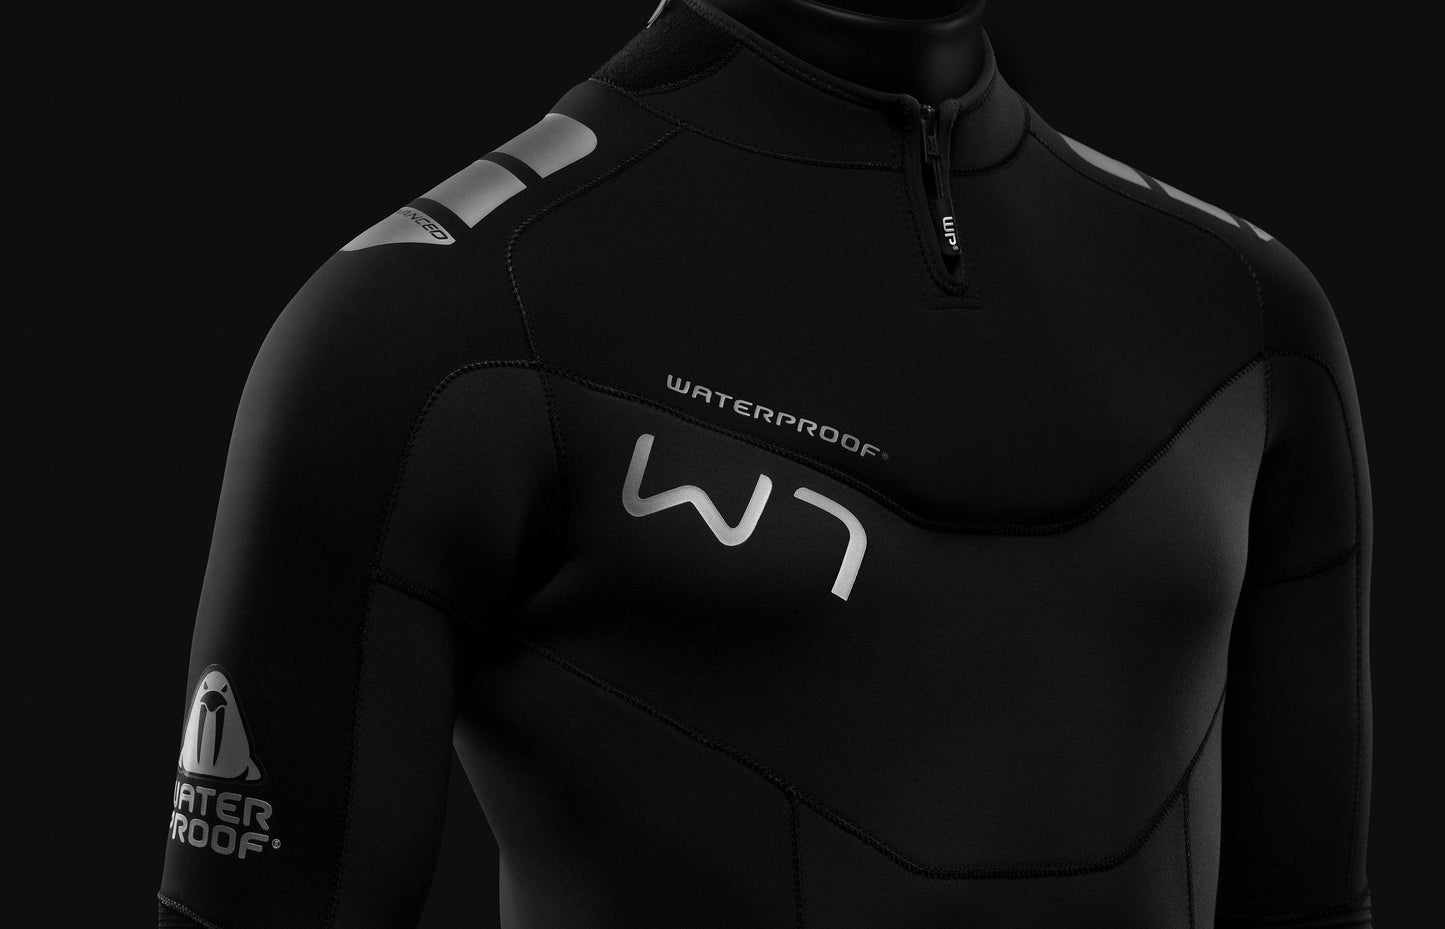 Waterproof W7 7mm Women's Wetsuit